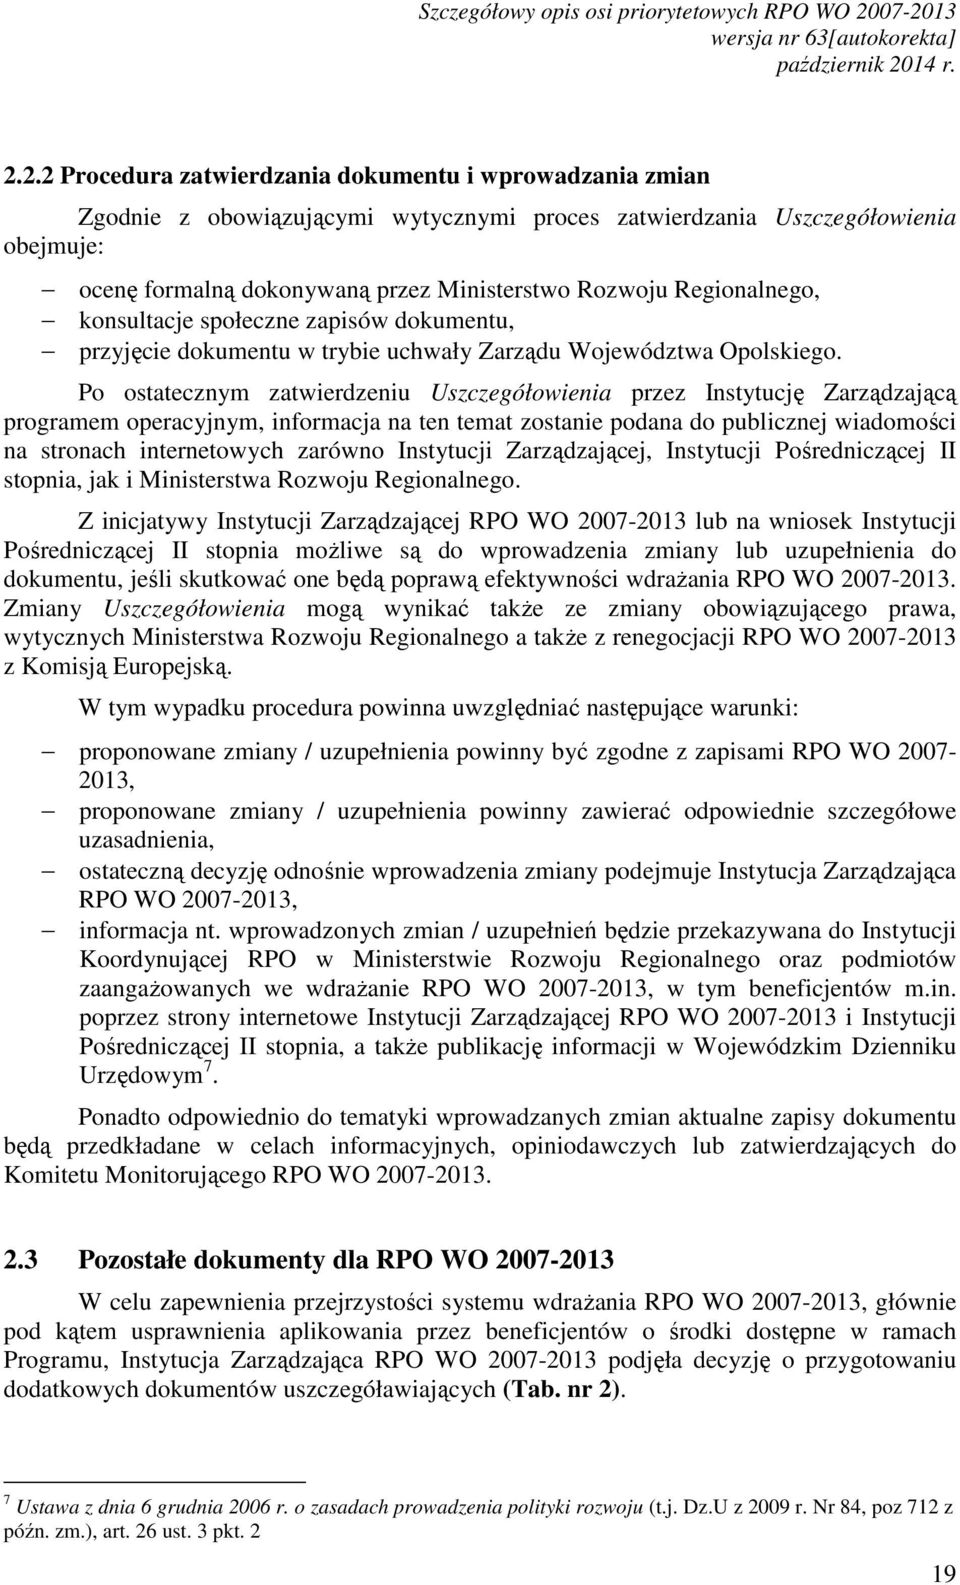 dokonywaną przez Ministerstwo Rozwoju Regionalnego, konsultacje społeczne zapisów dokumentu, przyjęcie dokumentu w trybie uchwały Zarządu Województwa Opolskiego.